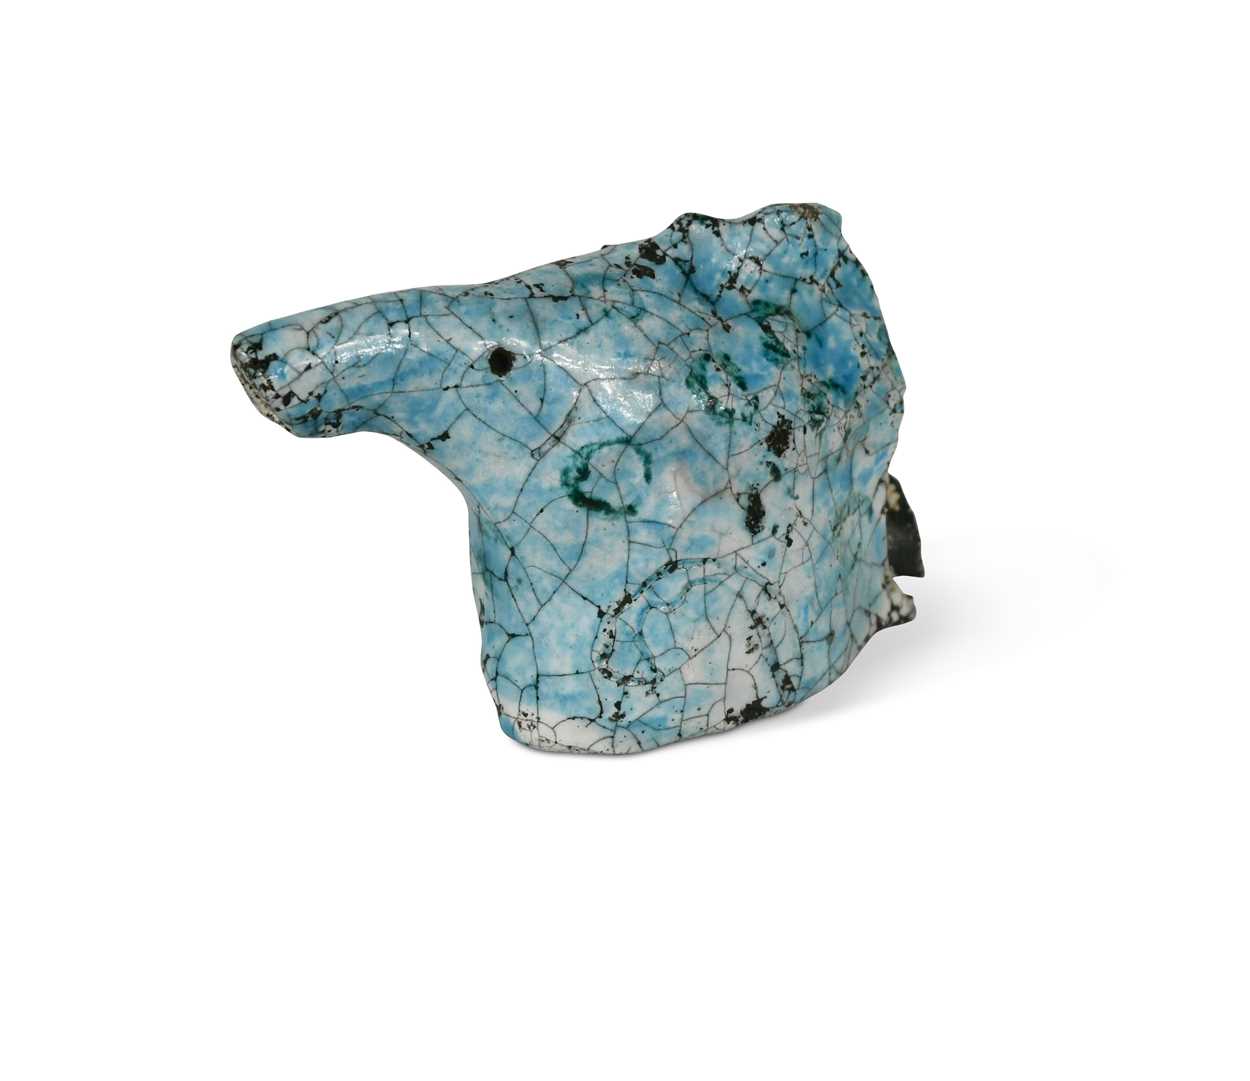 § Eric James Mellon (1925-2014), a rare raku glazed pottery model of a horse's head, 1983,